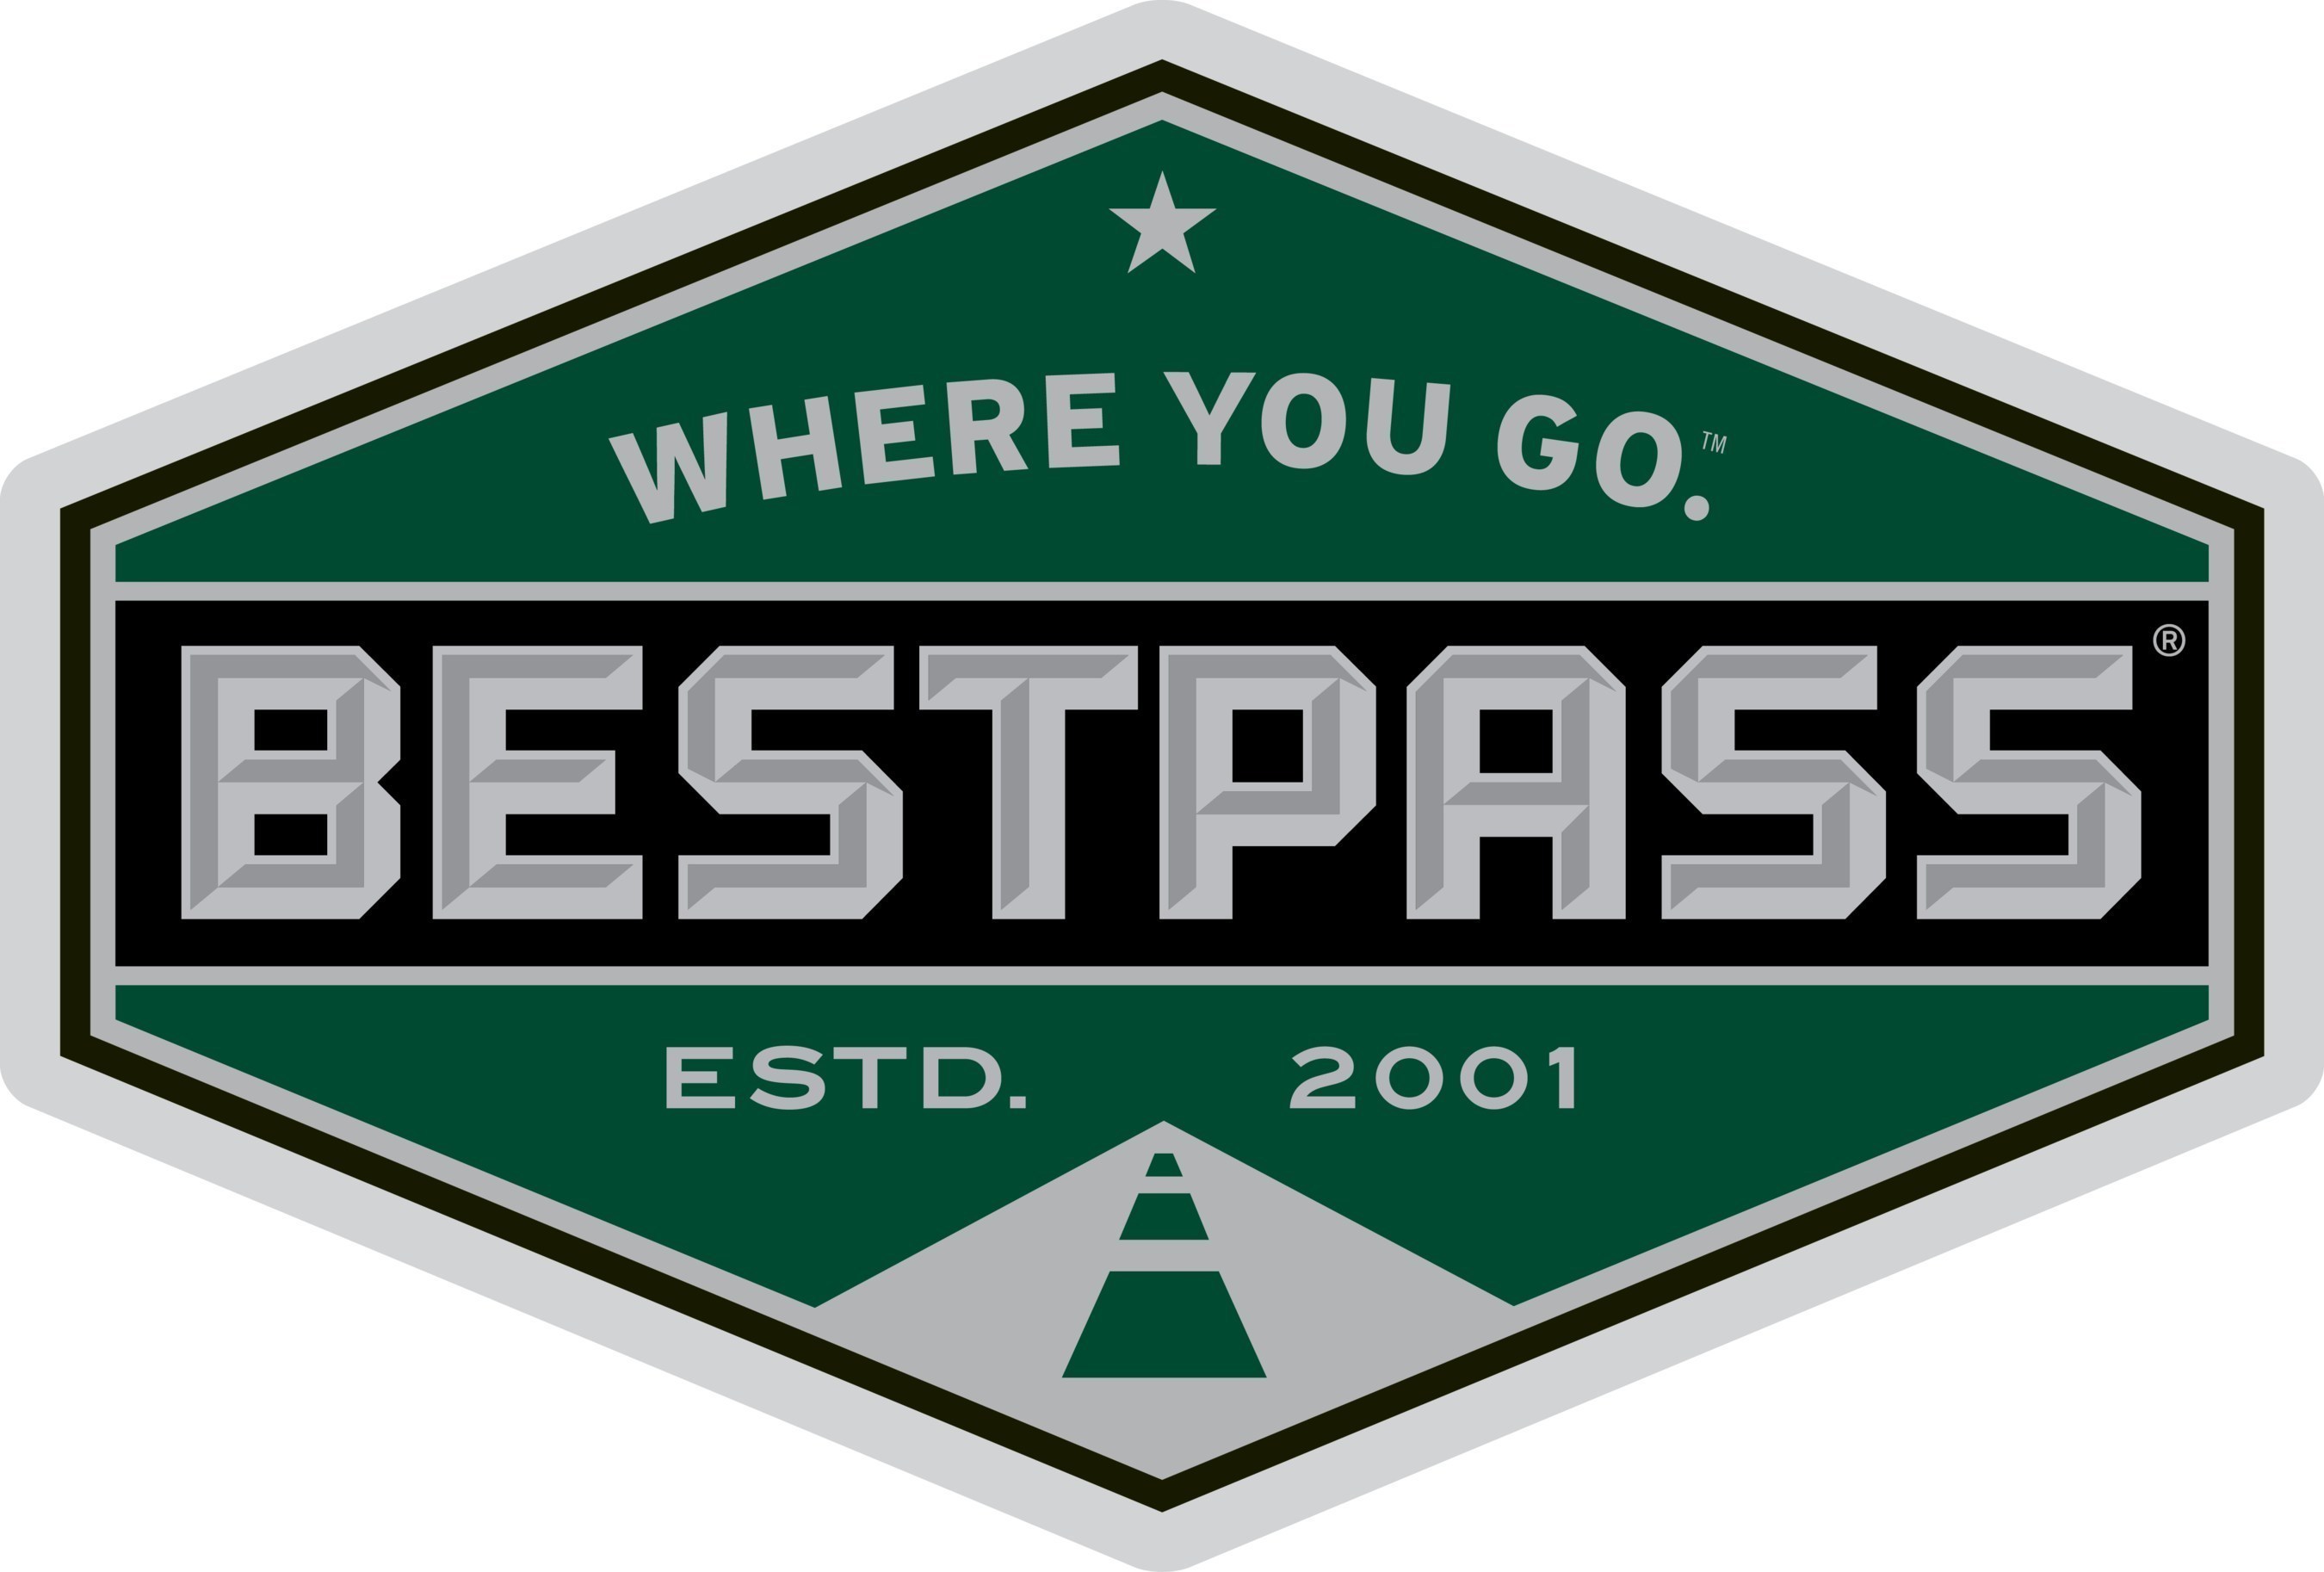 Bestpass Logo